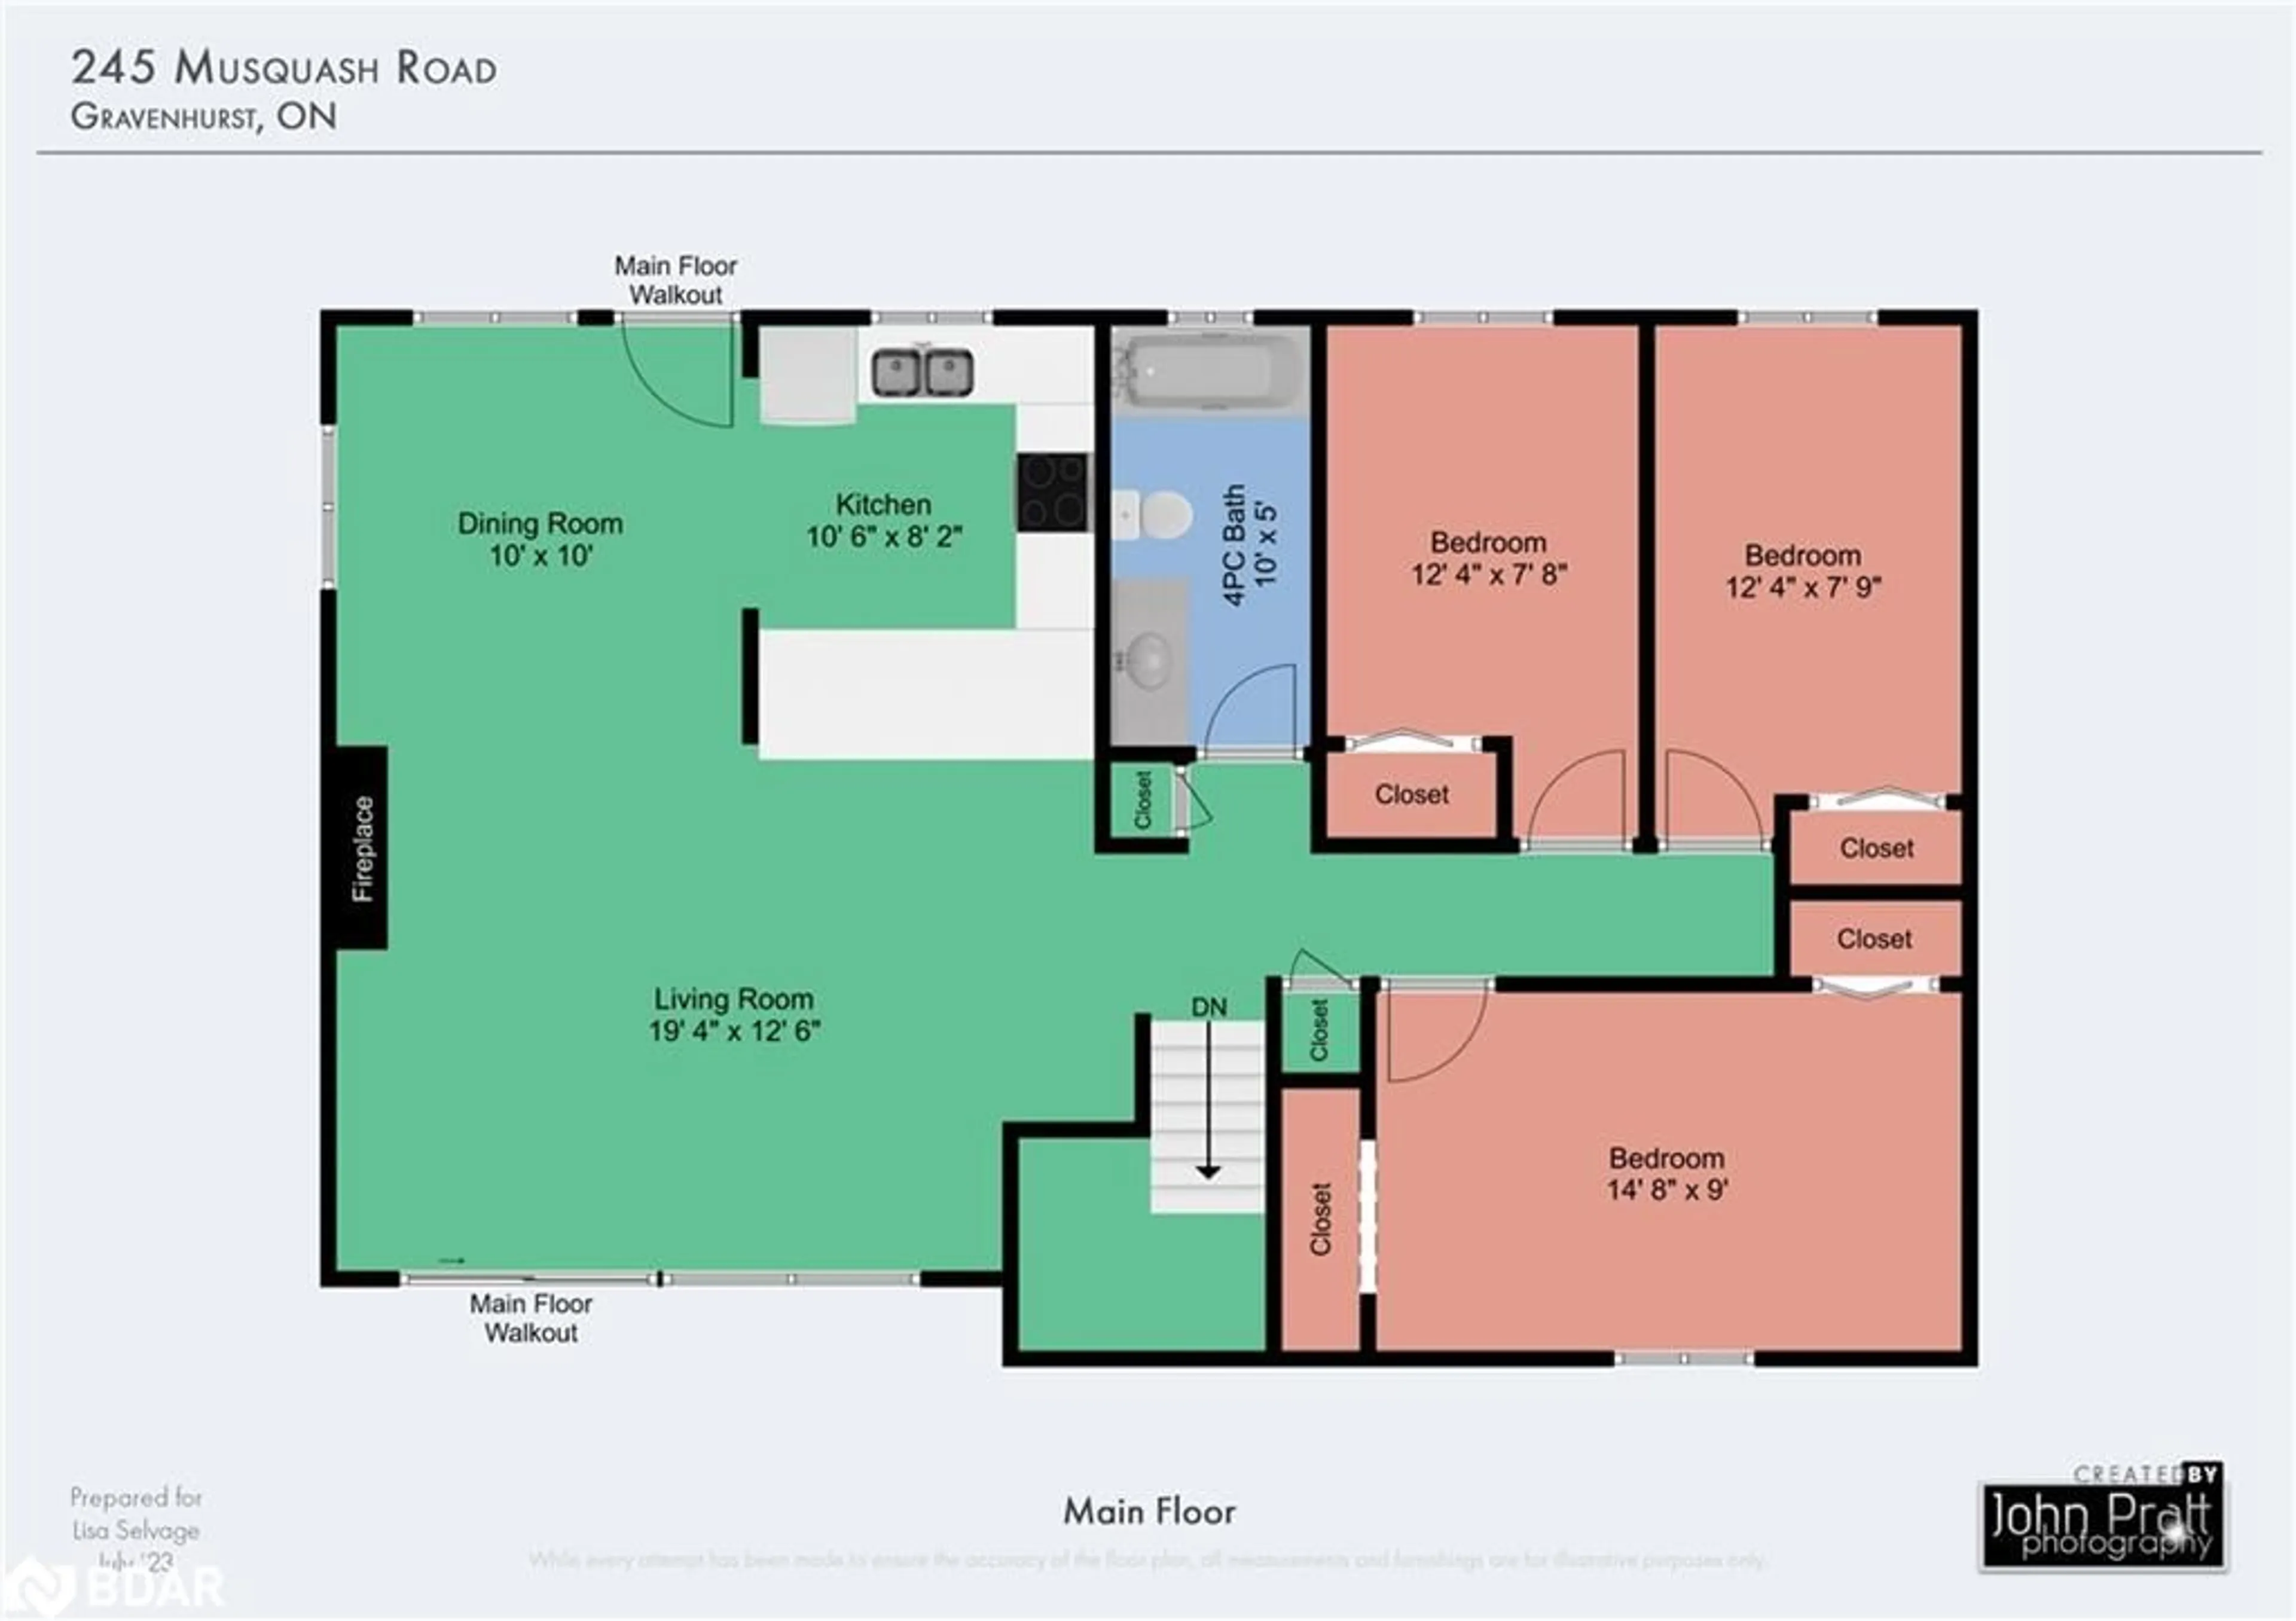 Floor plan for 245 Musquash Dr, Gravenhurst Ontario P1P 1R2